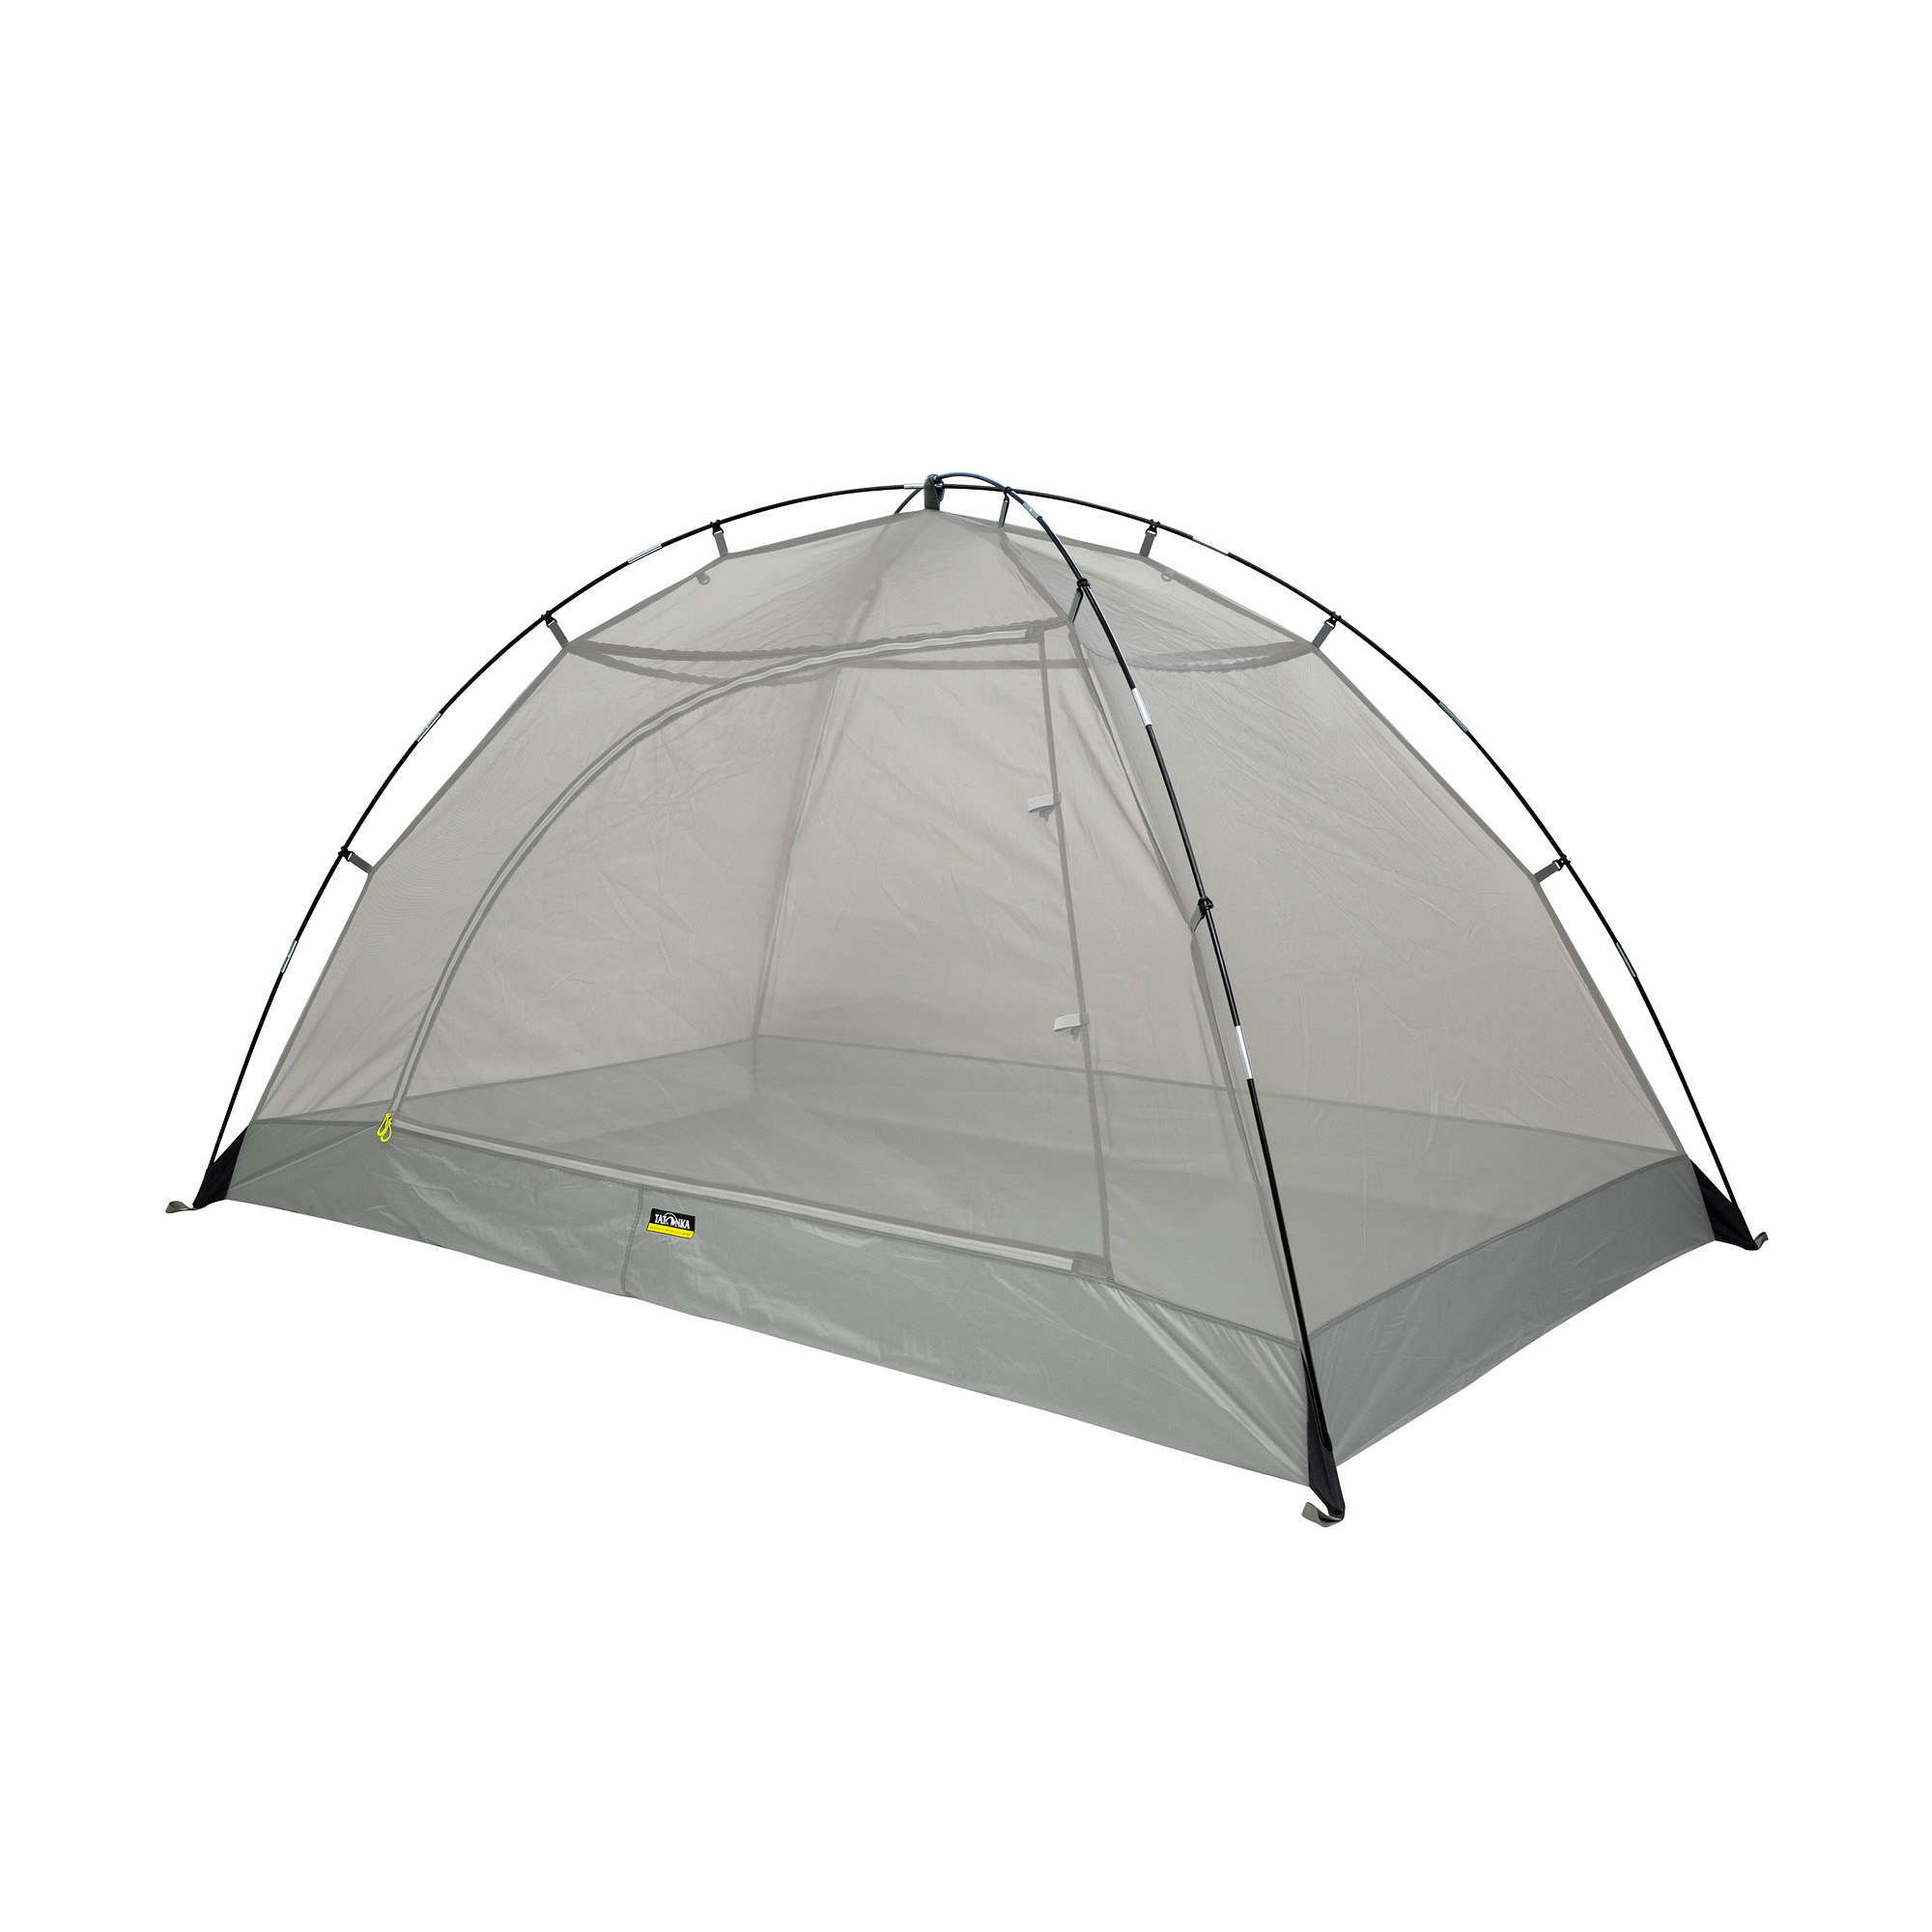 Double Moskito Dome Muggen tent